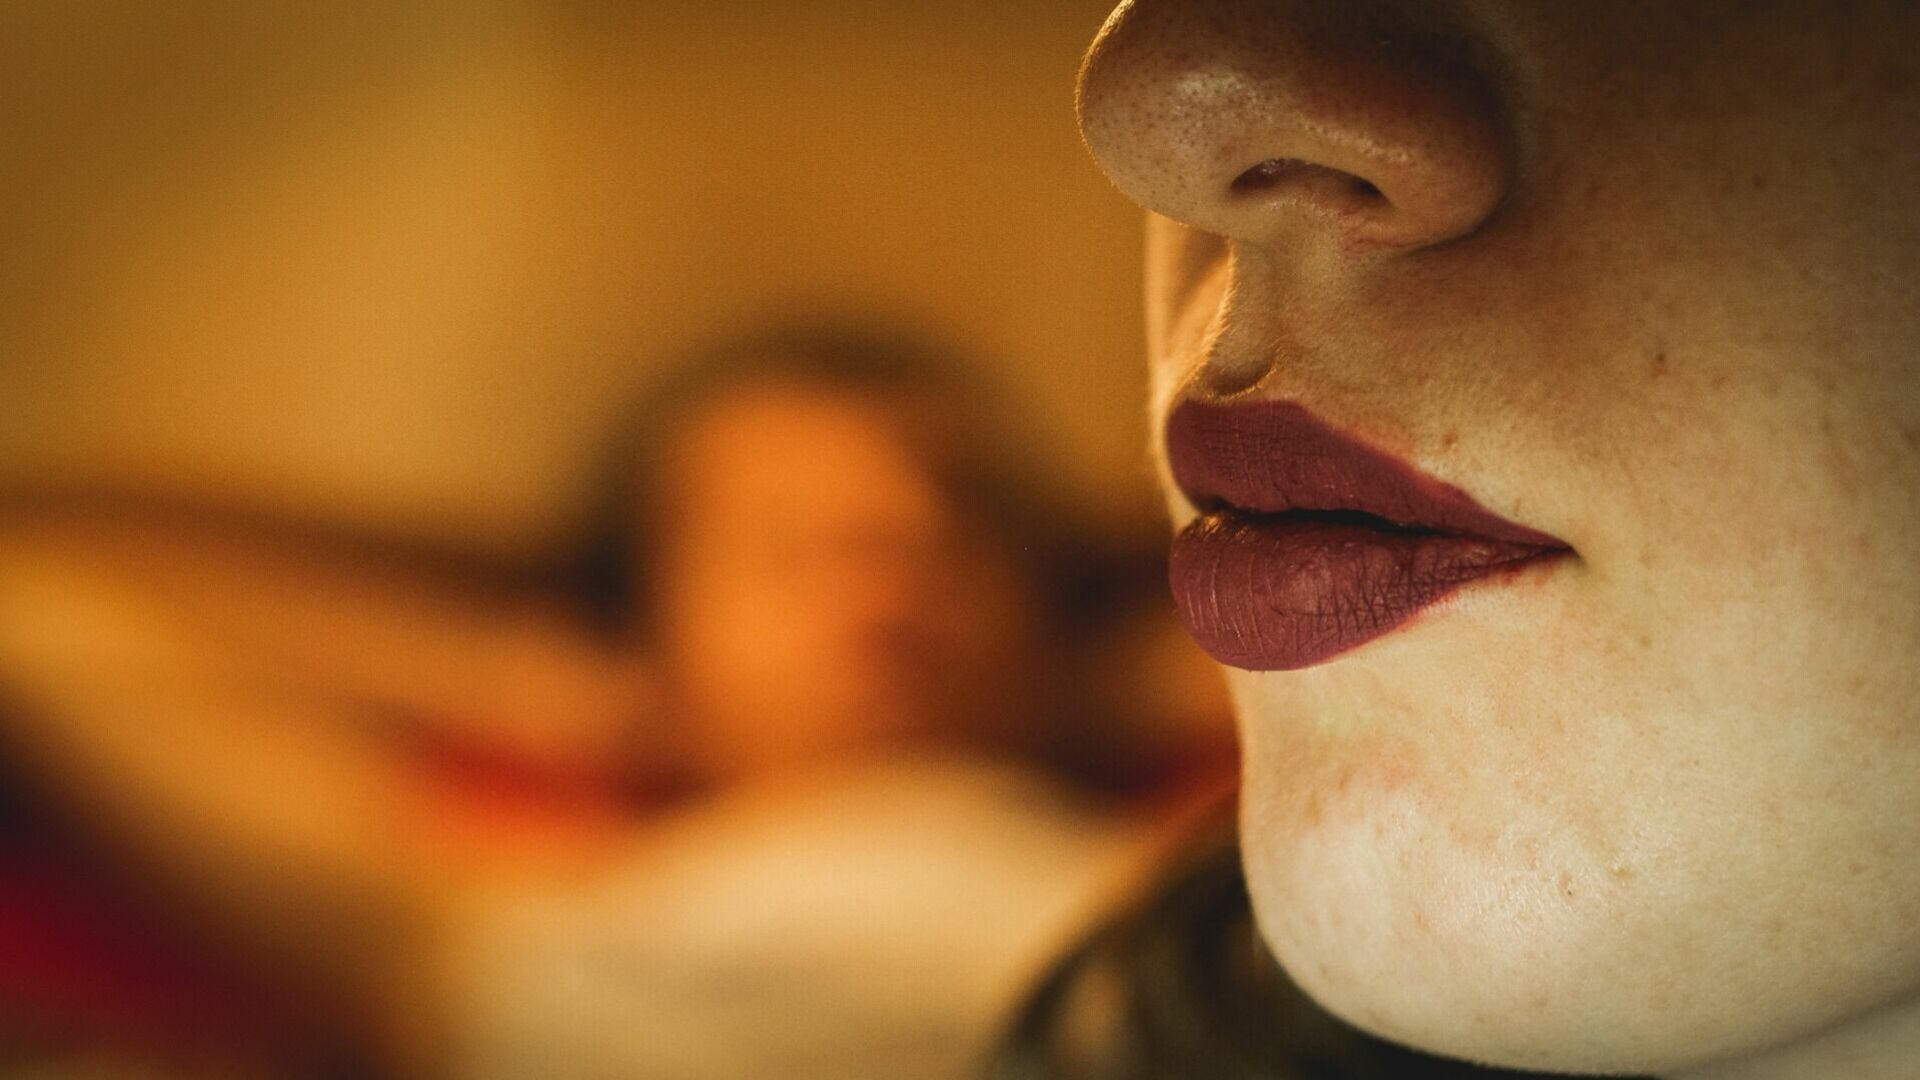 Что творят новосибирцы, чтобы улучшить сексуальную жизнь